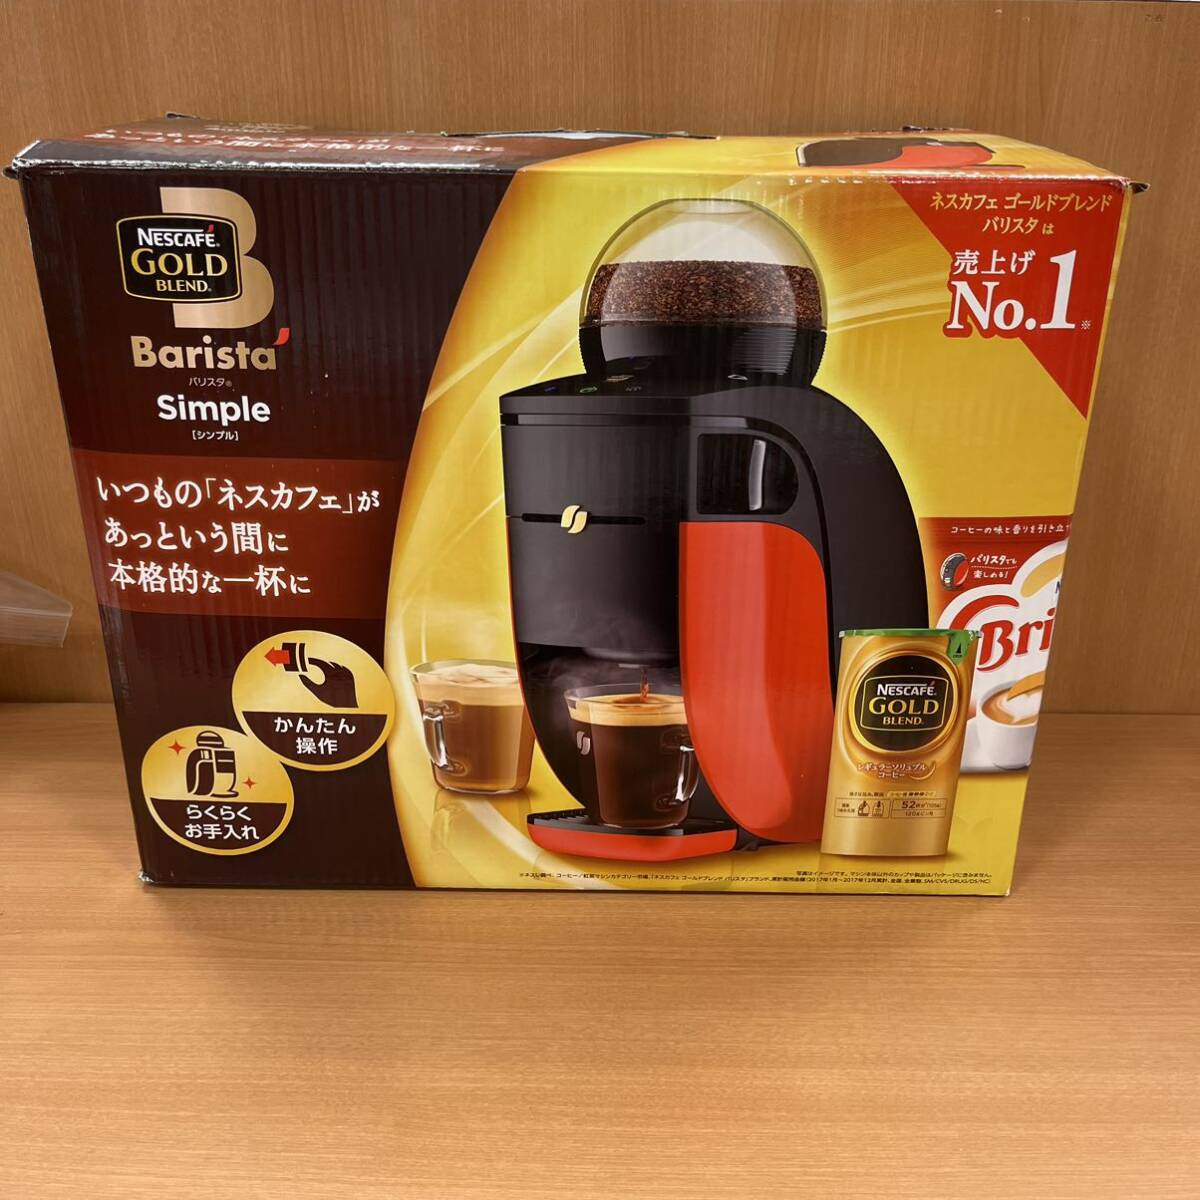 T4/【個人保管品】ネスカフェ バリスタ Simple ゴールドブレンド SPM9636 NESCAFE コーヒーメーカー レッド の画像1